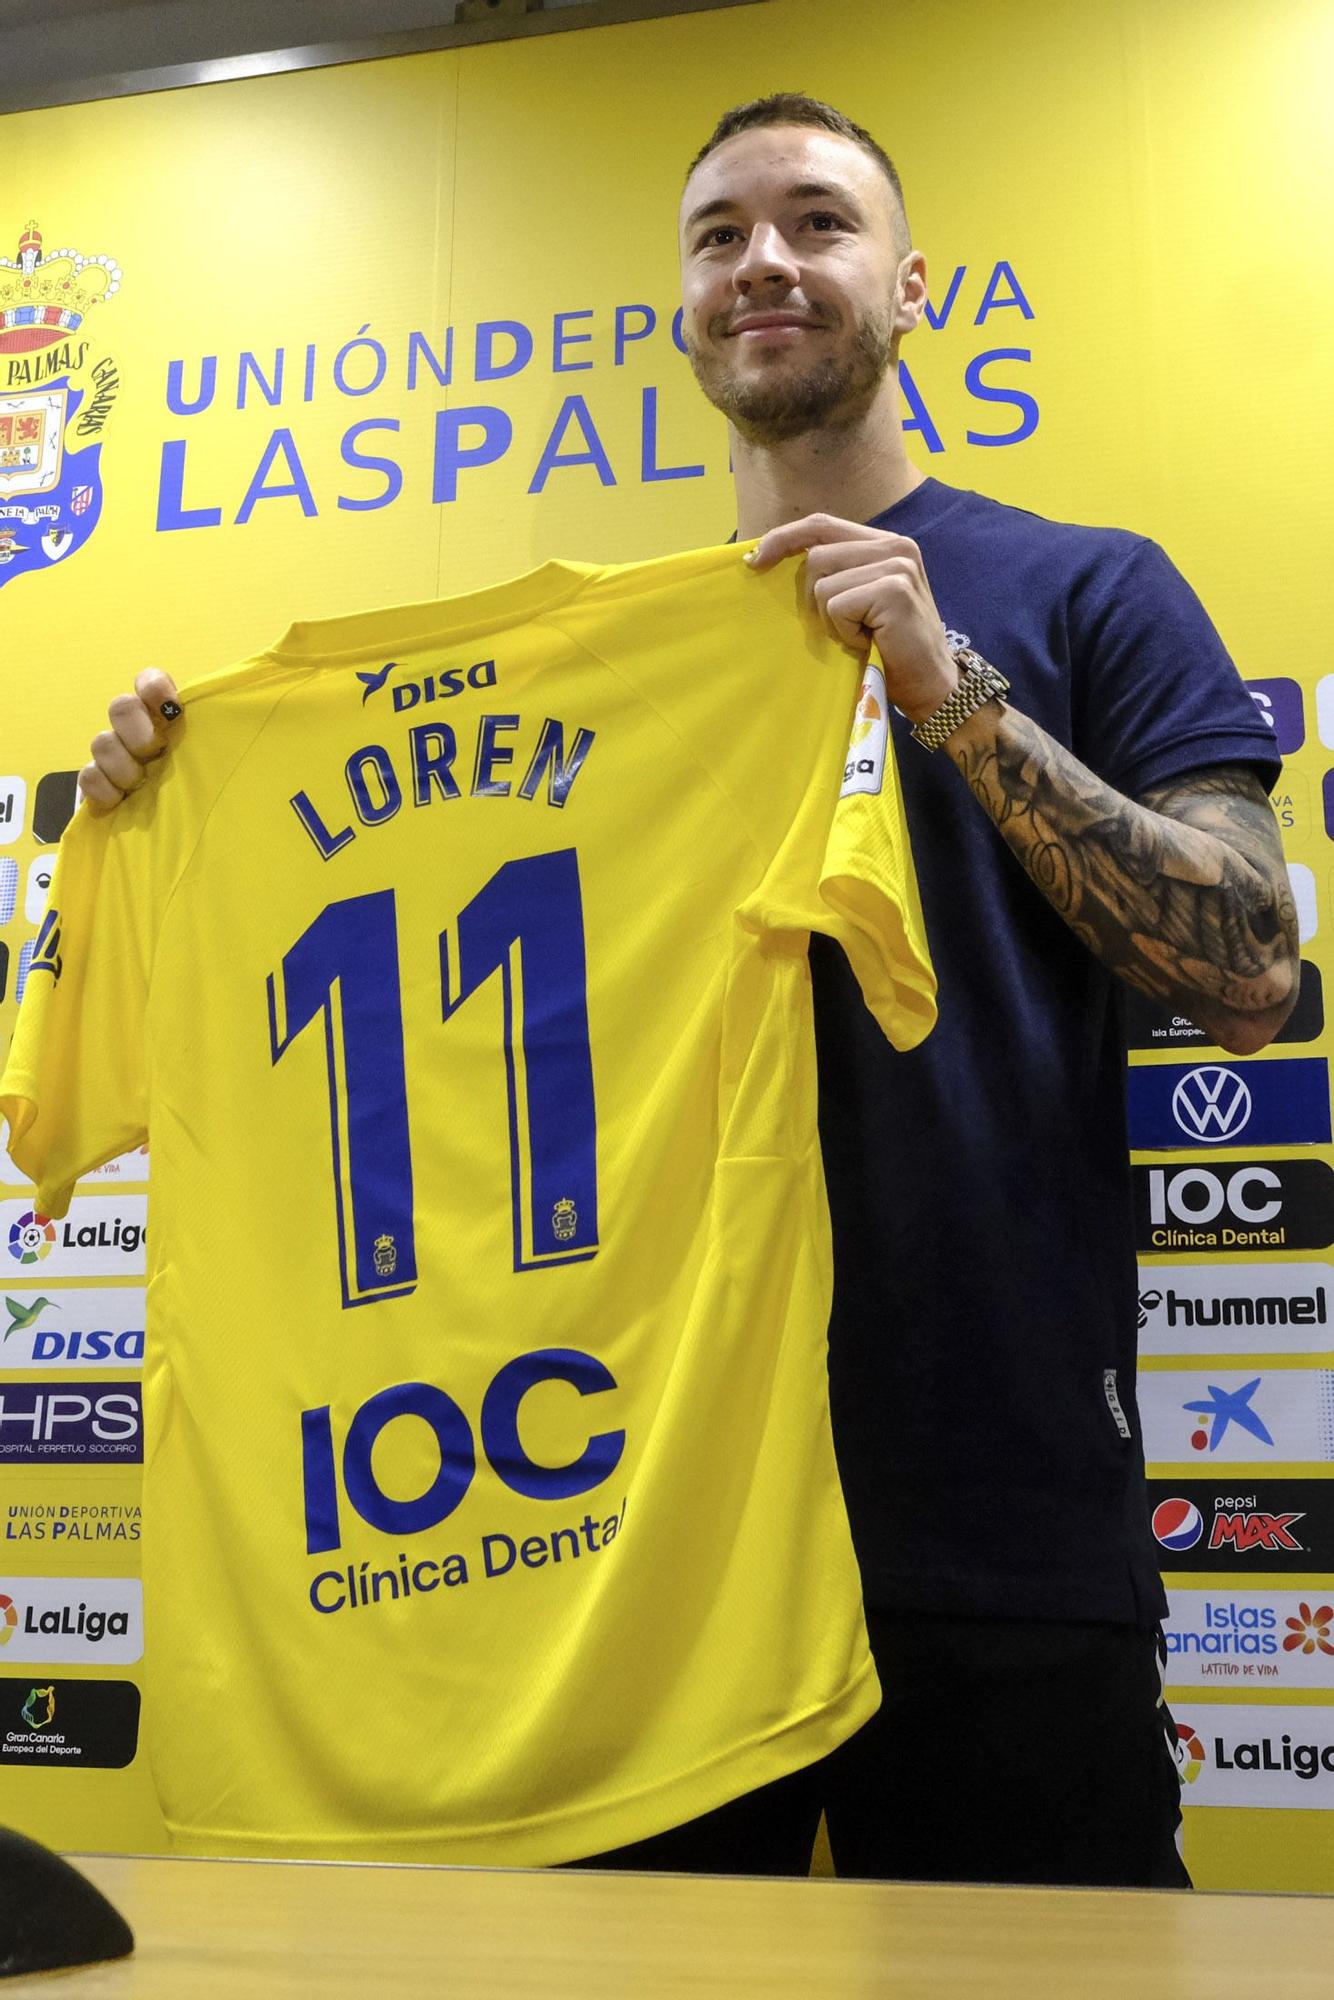 Presentación de Loren, nuevo jugador de la UD Las Palmas